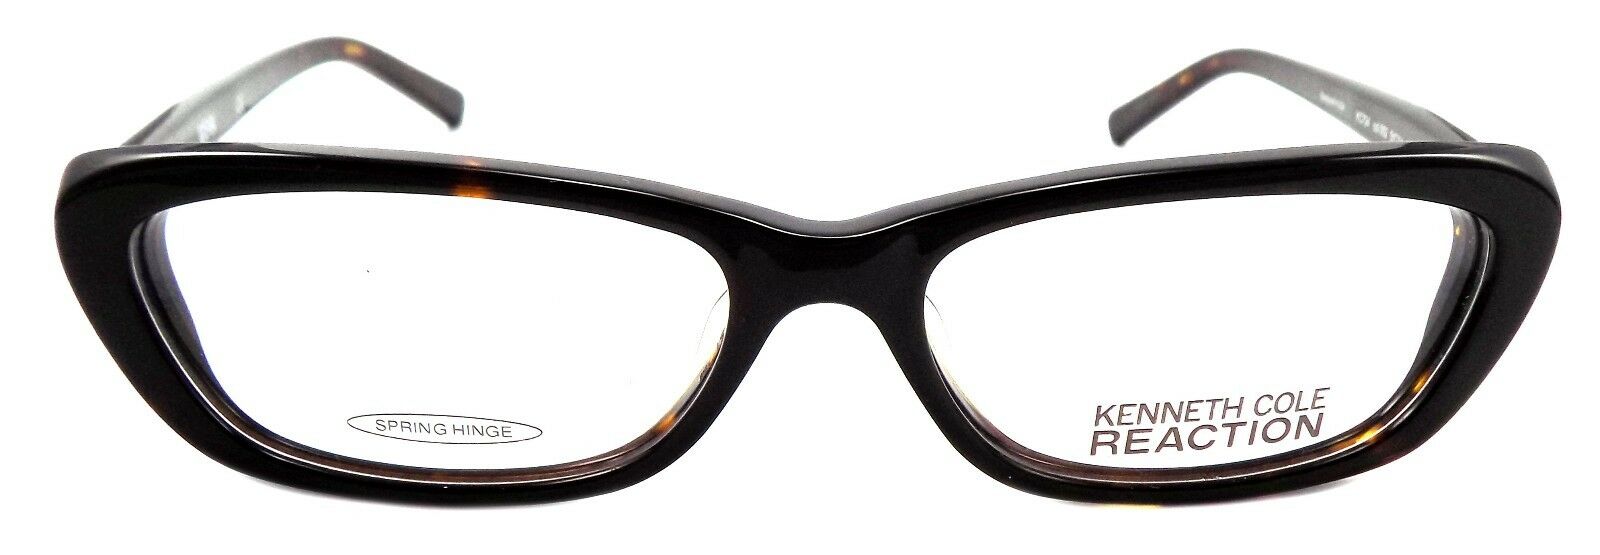 2-Kenneth Cole Reaction KC0724 052 Women's Glasses Cat Eye 51-14-135 Dark Havana-726773172354-IKSpecs